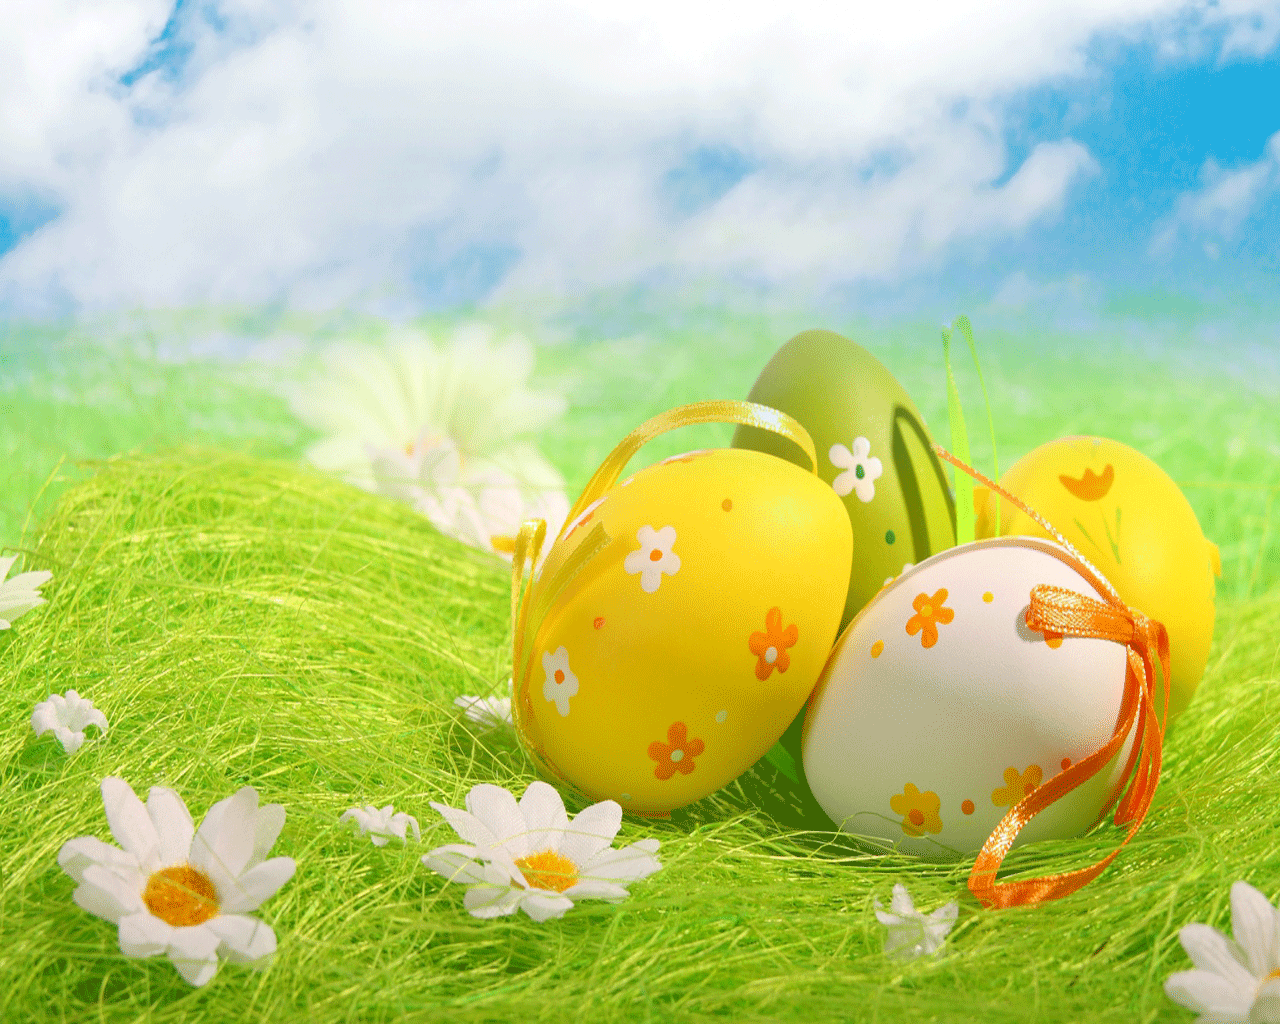 Happy Easter. Easter egg cartoon, Easter wallpaper, Easter eggs